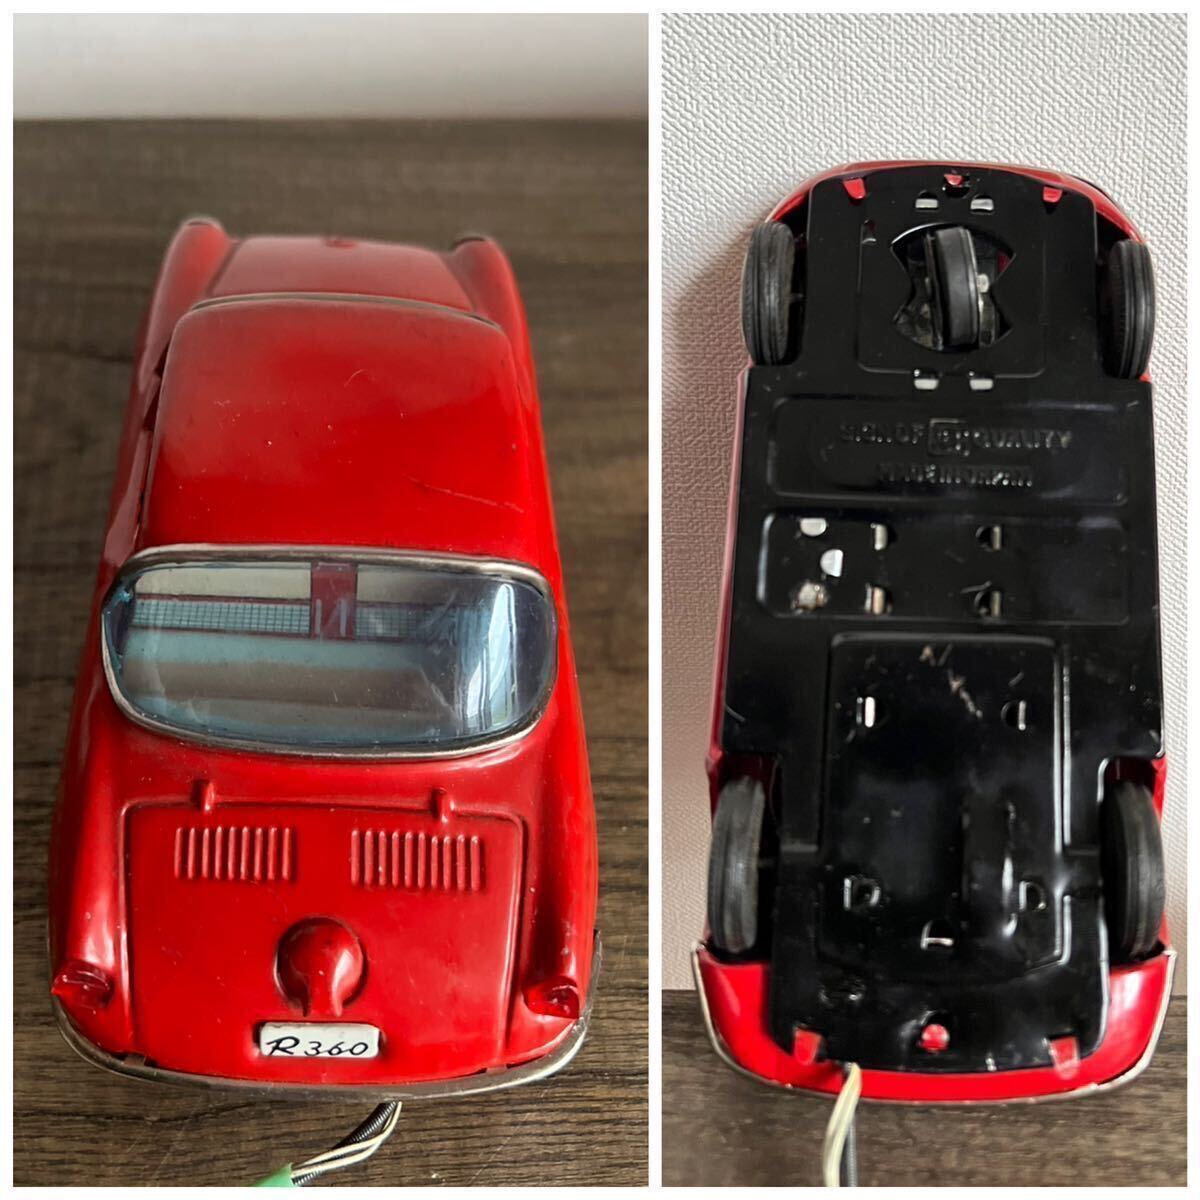  подлинная вещь Mazda mazda R360 купе жестяная пластина миникар Model Pet старый машина красный фигурка автомобиль известная машина retro машина car. плата магазин 